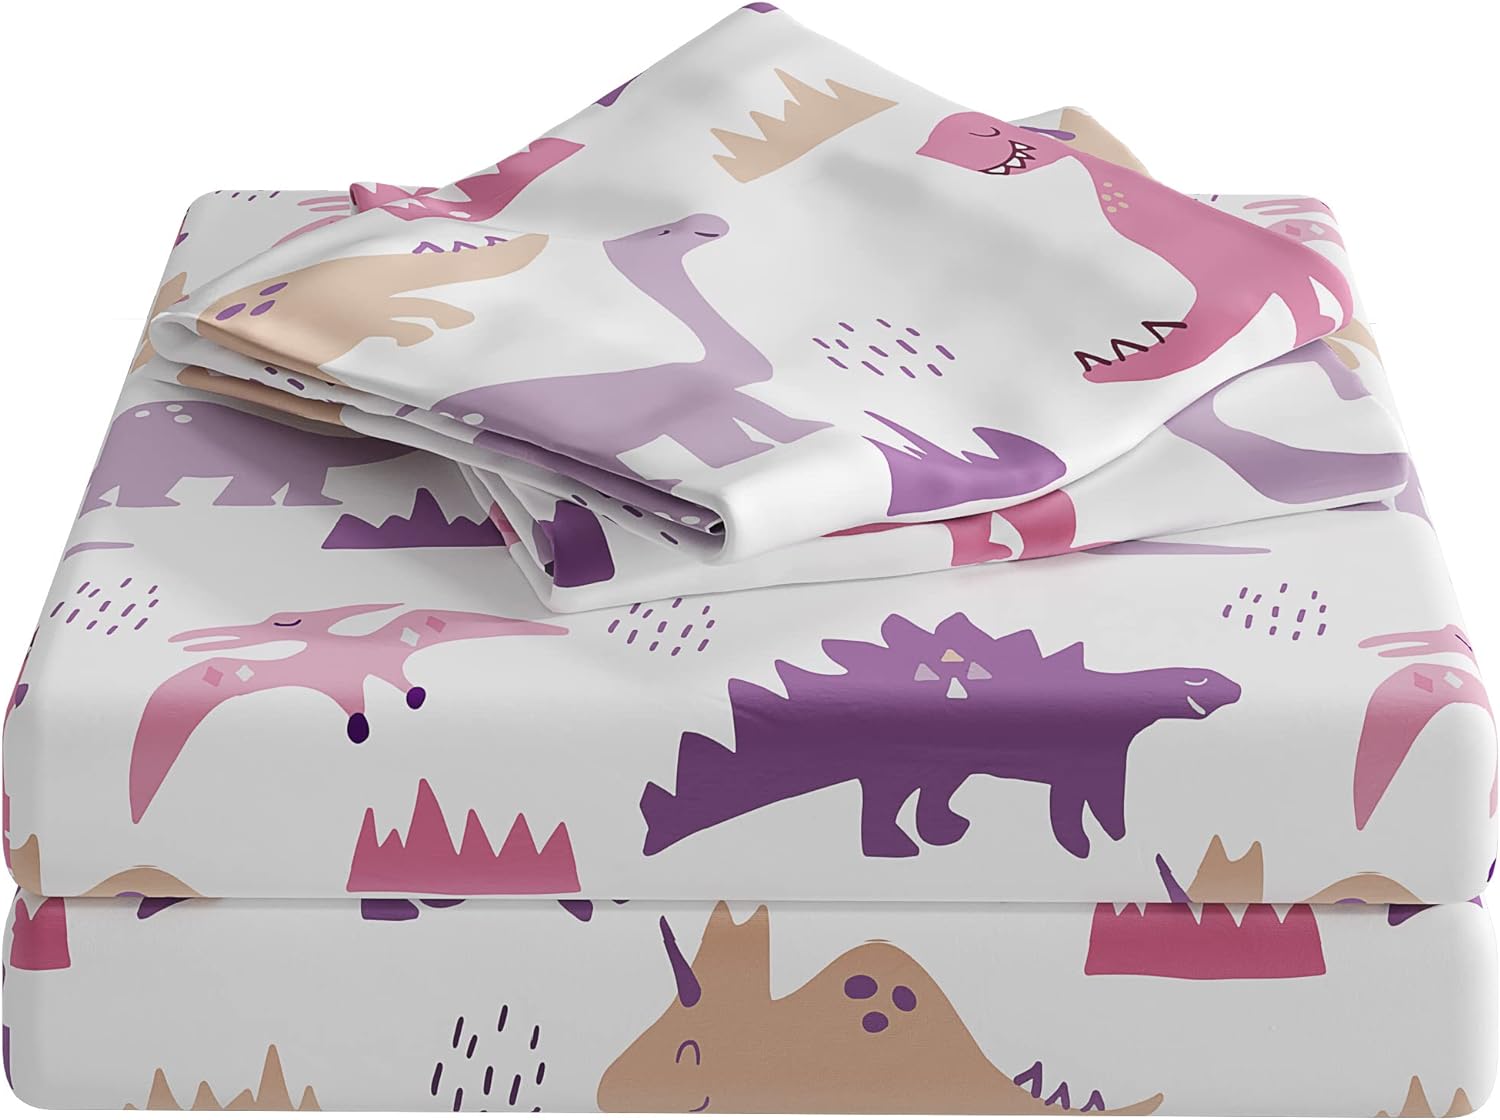 New Kids Sheet Set - Pink Dinosaurs